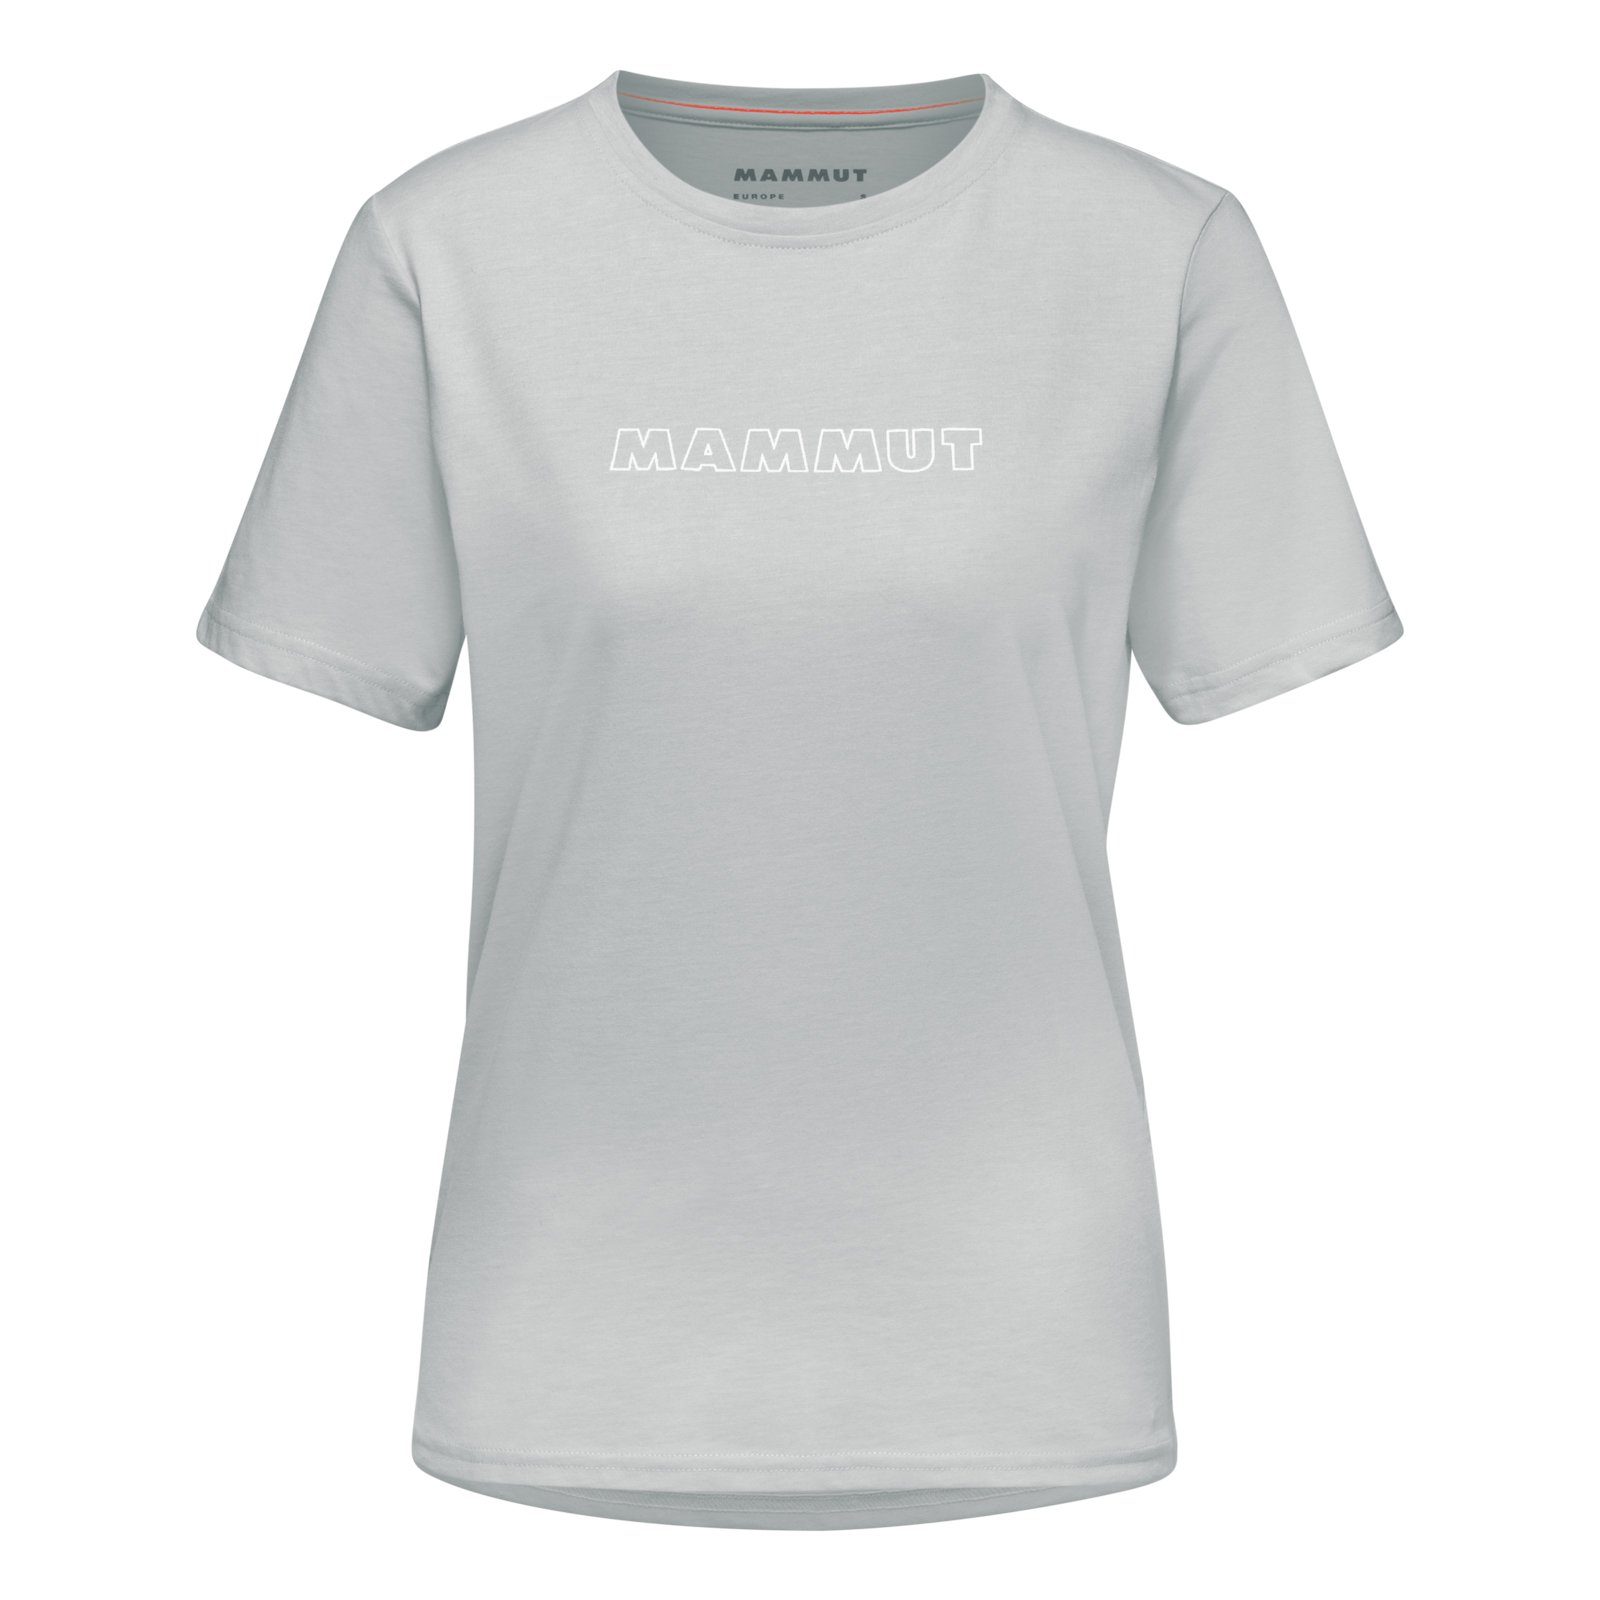 Mammut T-Shirt Mammut Markenschriftzug mit großem highway 0401 T-Shirt melange Logo Core